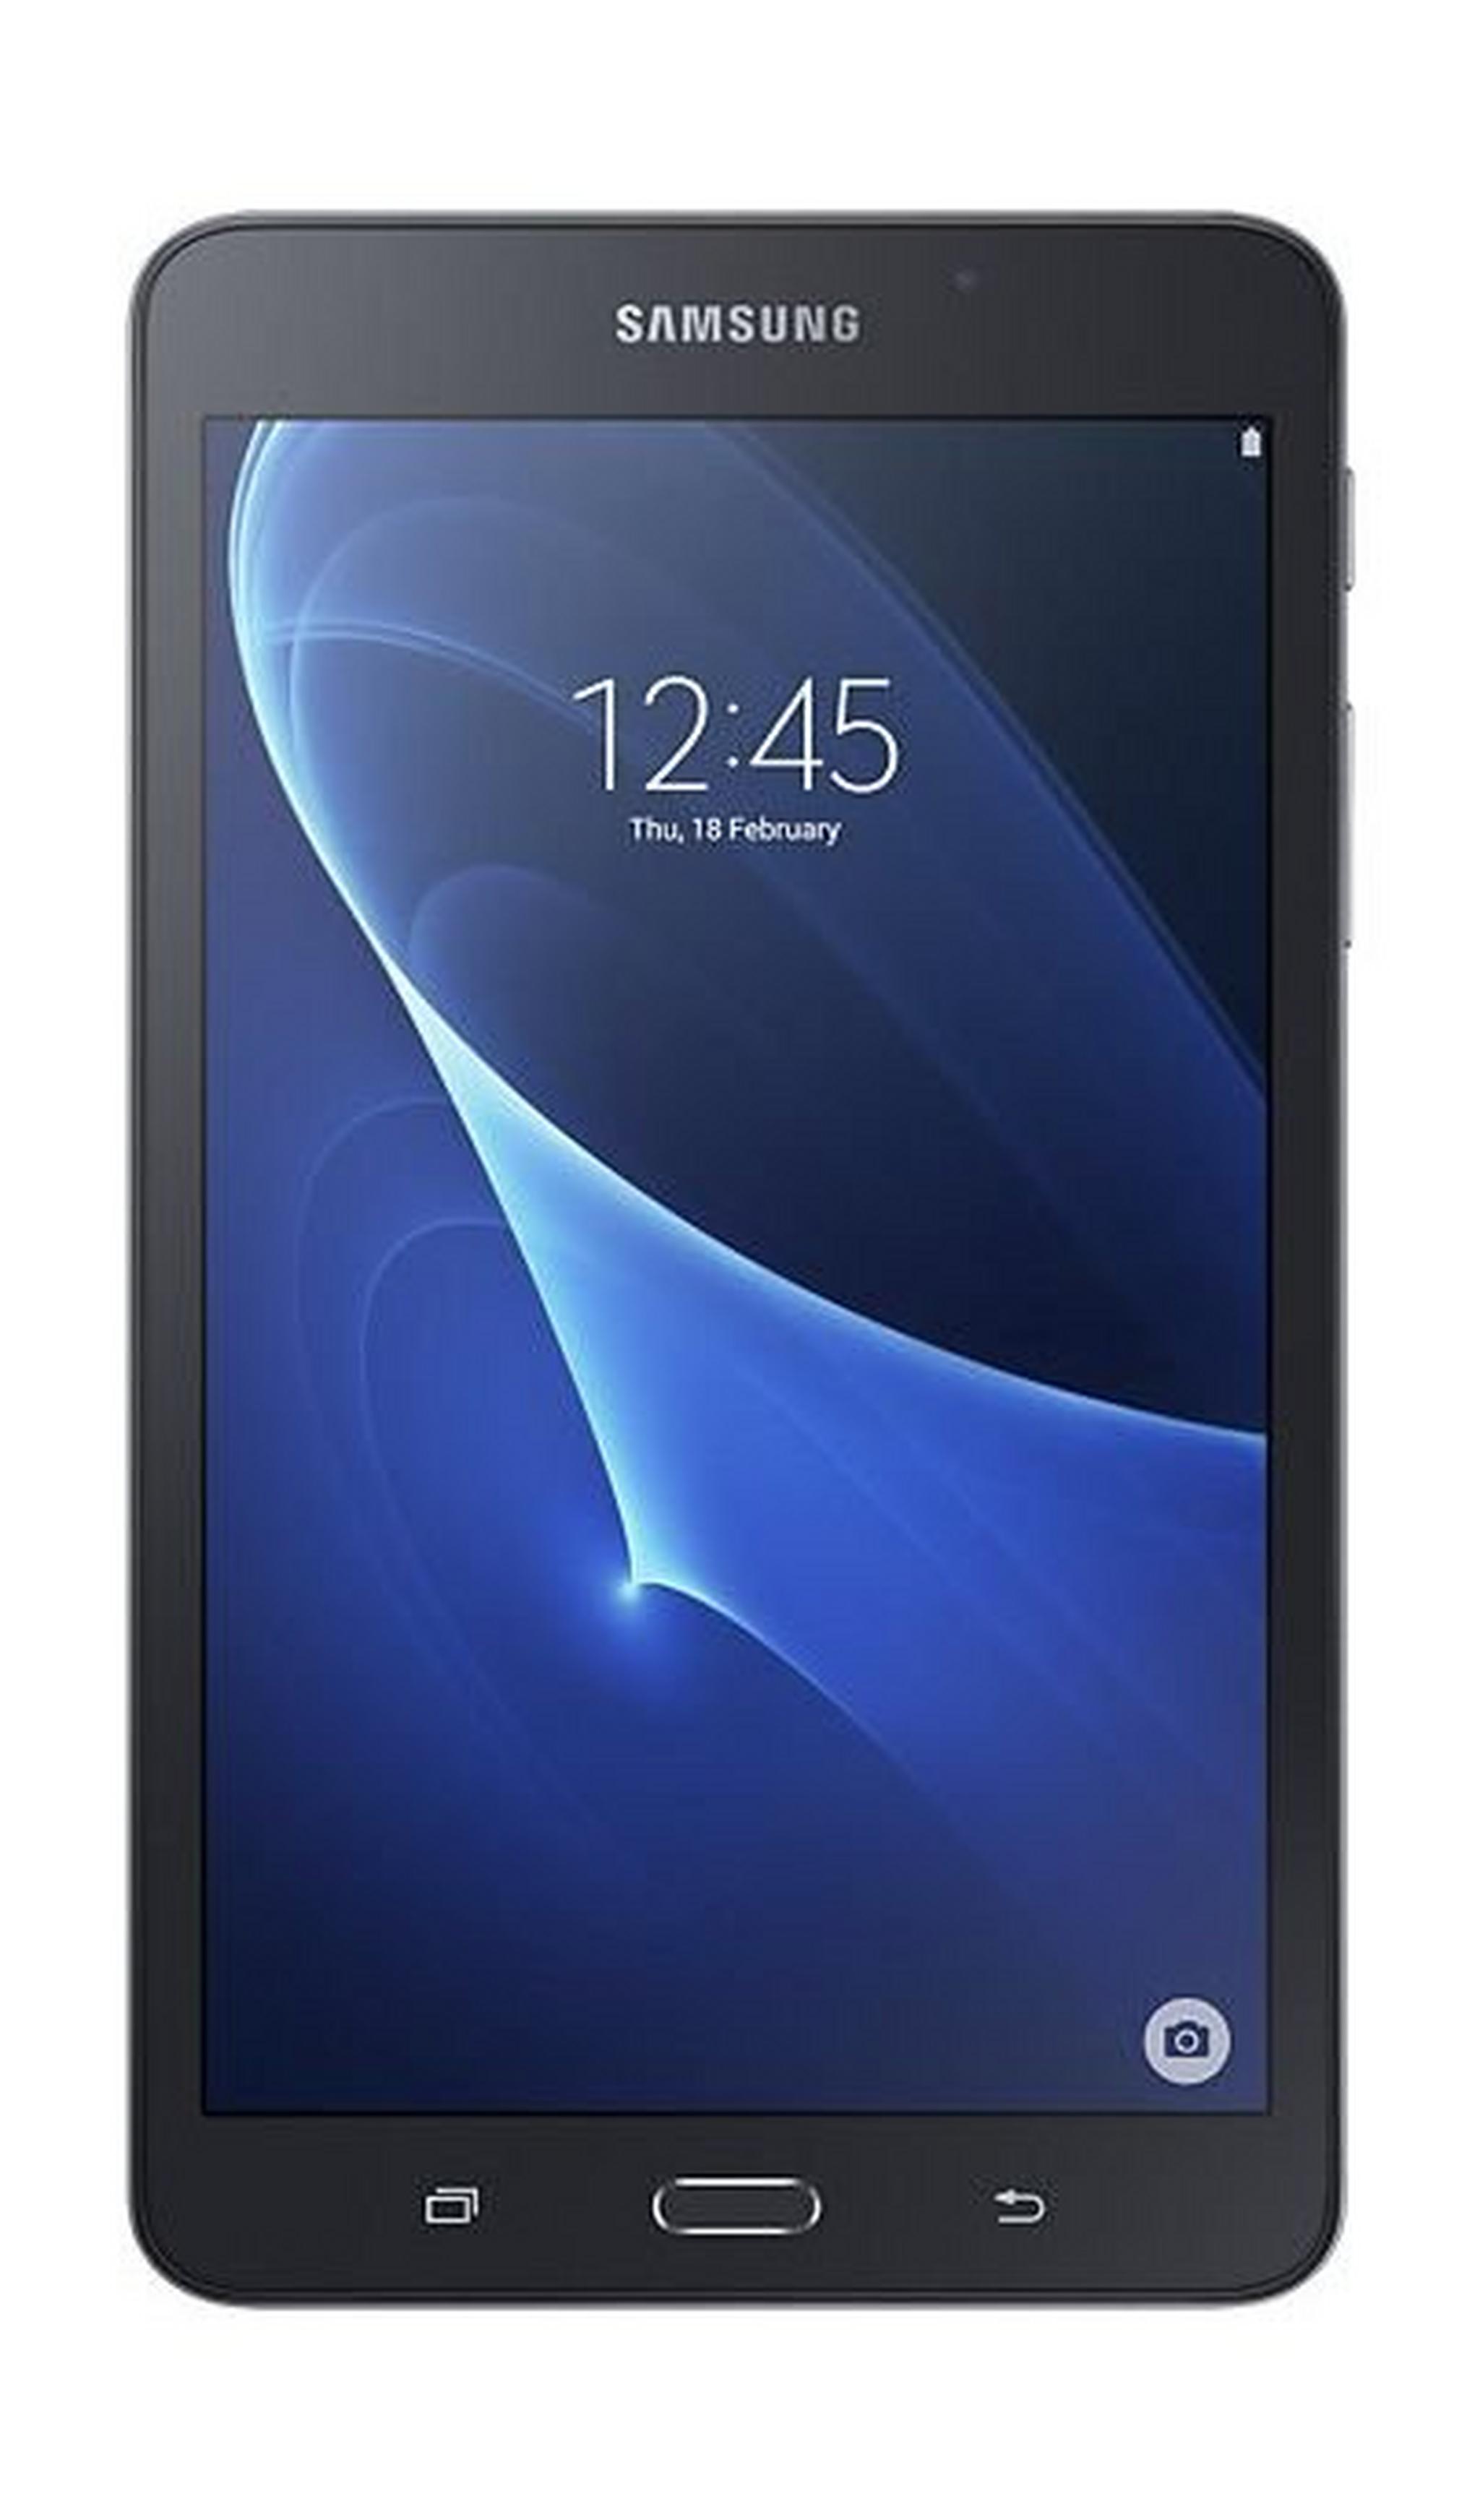 SAMSUNG Galaxy Tab A 7-inch 8GB 4G LTE Tablet - Black